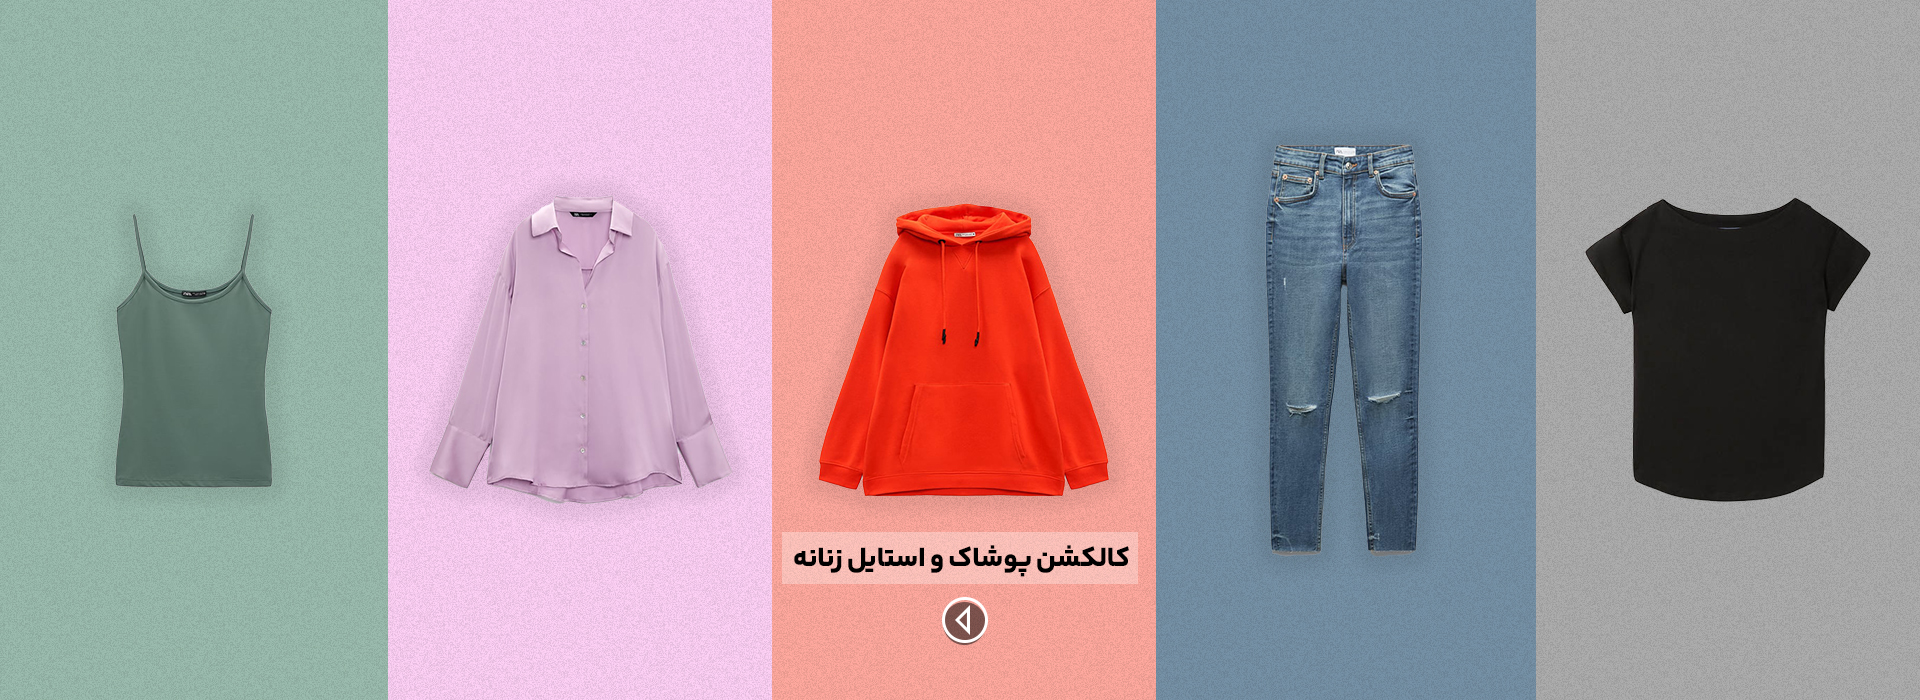 خرید پوشاک و لباس زنانه از ترکیه